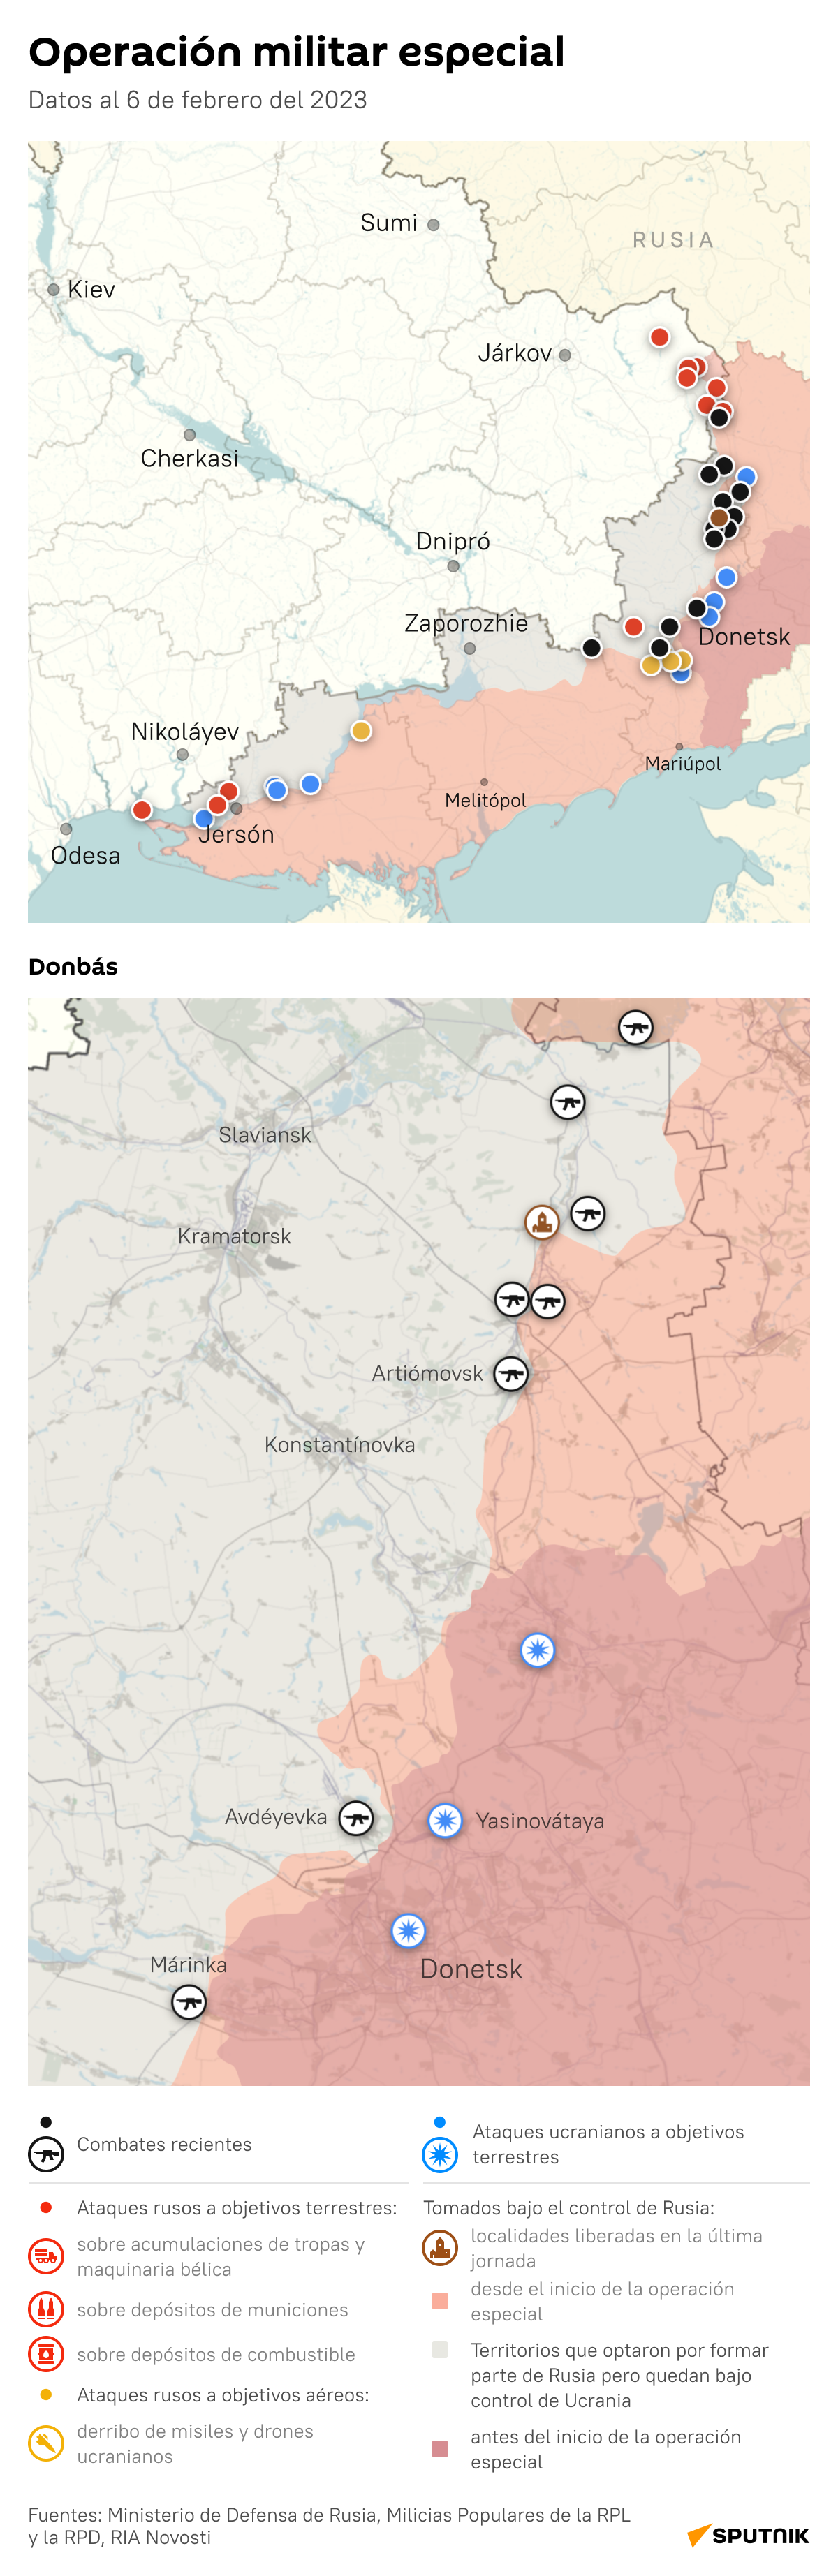 Mapa: cómo avanza la operación especial de Rusia en Ucrania - Sputnik Mundo